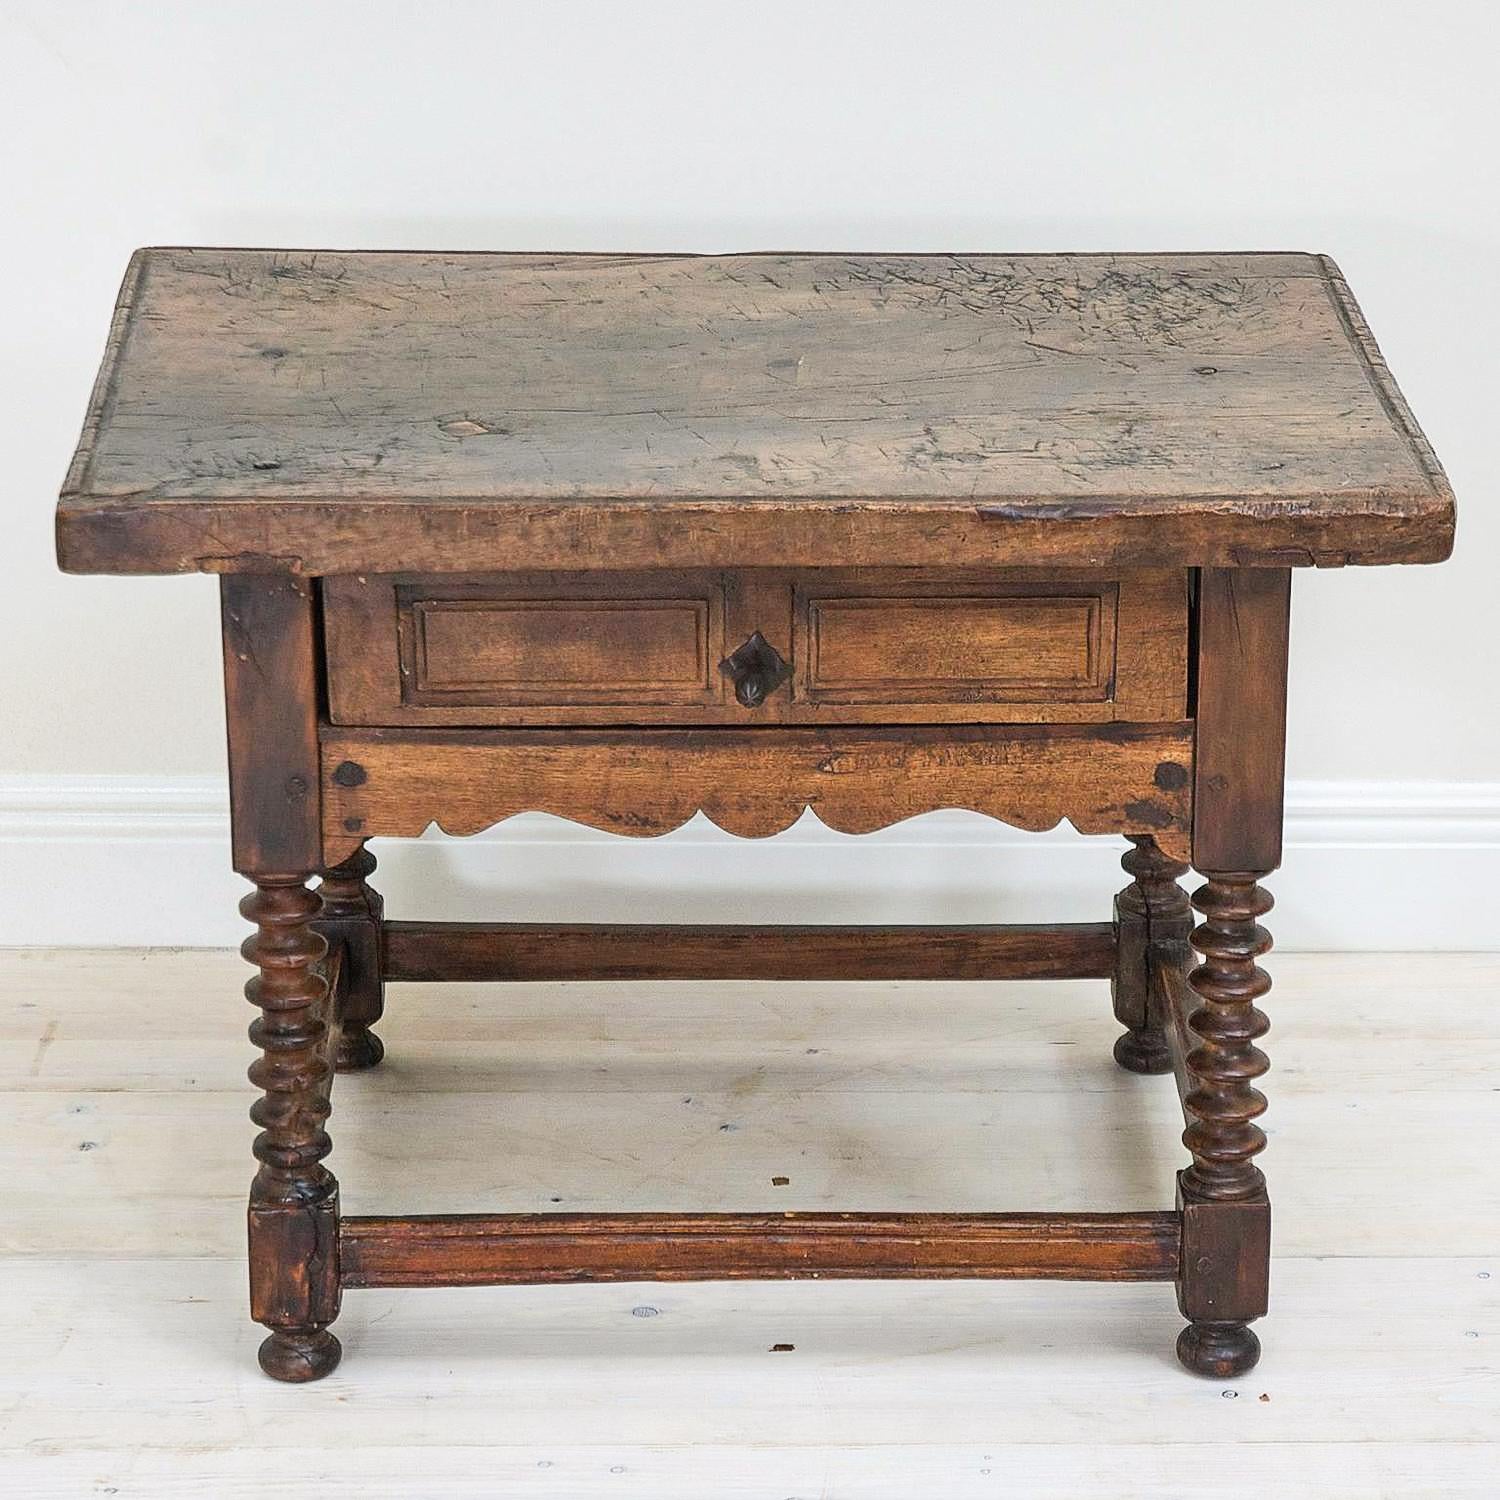 Dieser kleine, rustikale spanische Schuhmachertisch (mesa de zapatero) aus dem 18. Jahrhundert wurde, wie viele dieser traditionellen Möbel, aus massivem Nussbaumholz handgefertigt. Die Tischplatte besteht aus einem einzigen Brett und weist